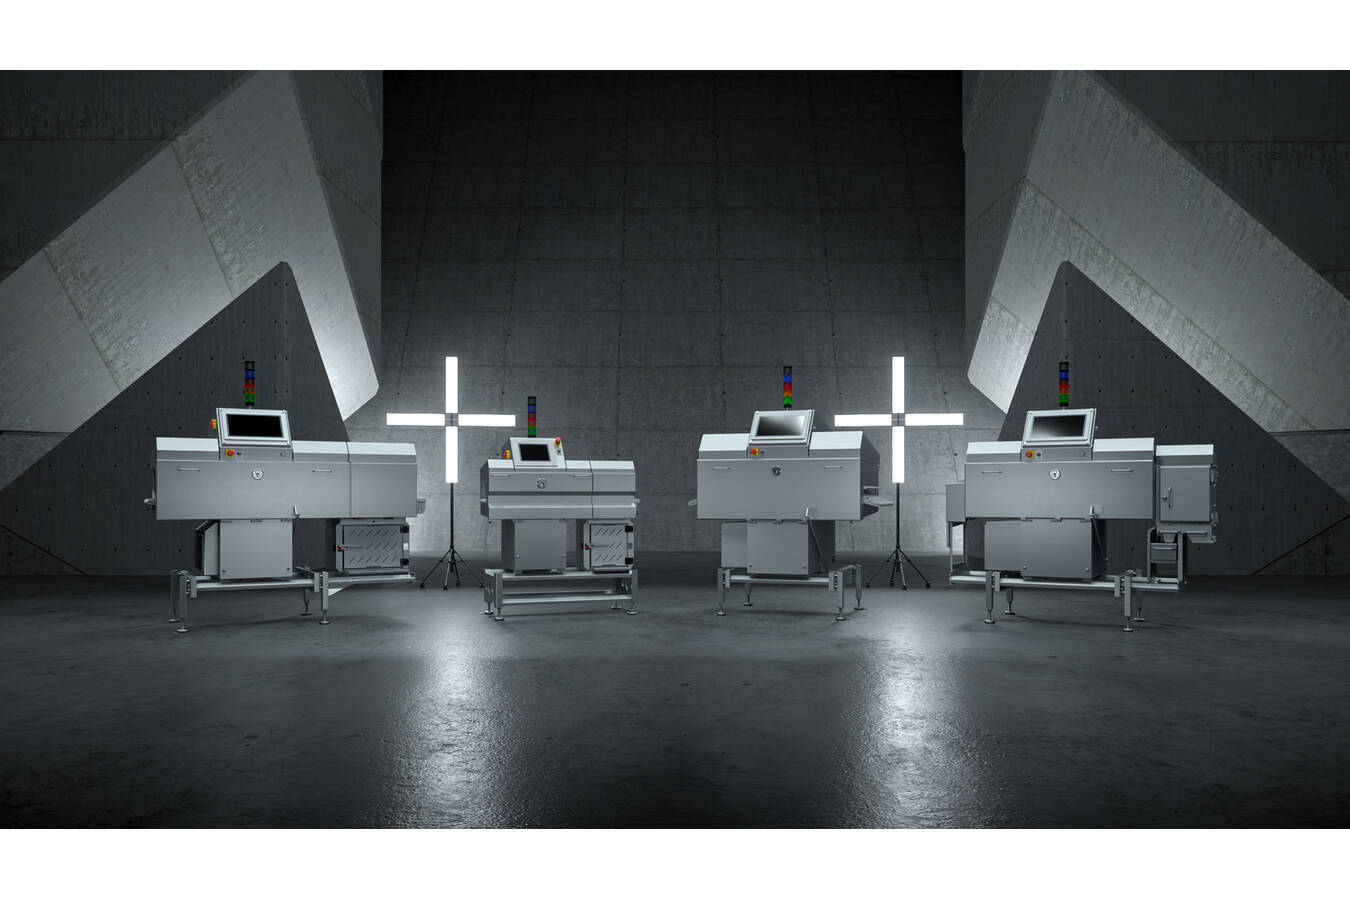 Sesotec Highlight zur Anuga FoodTec 2022  Röntgeninspektionssysteme der neuesten Generation 
Messestand in Halle 5.2, Stand A030/B031

